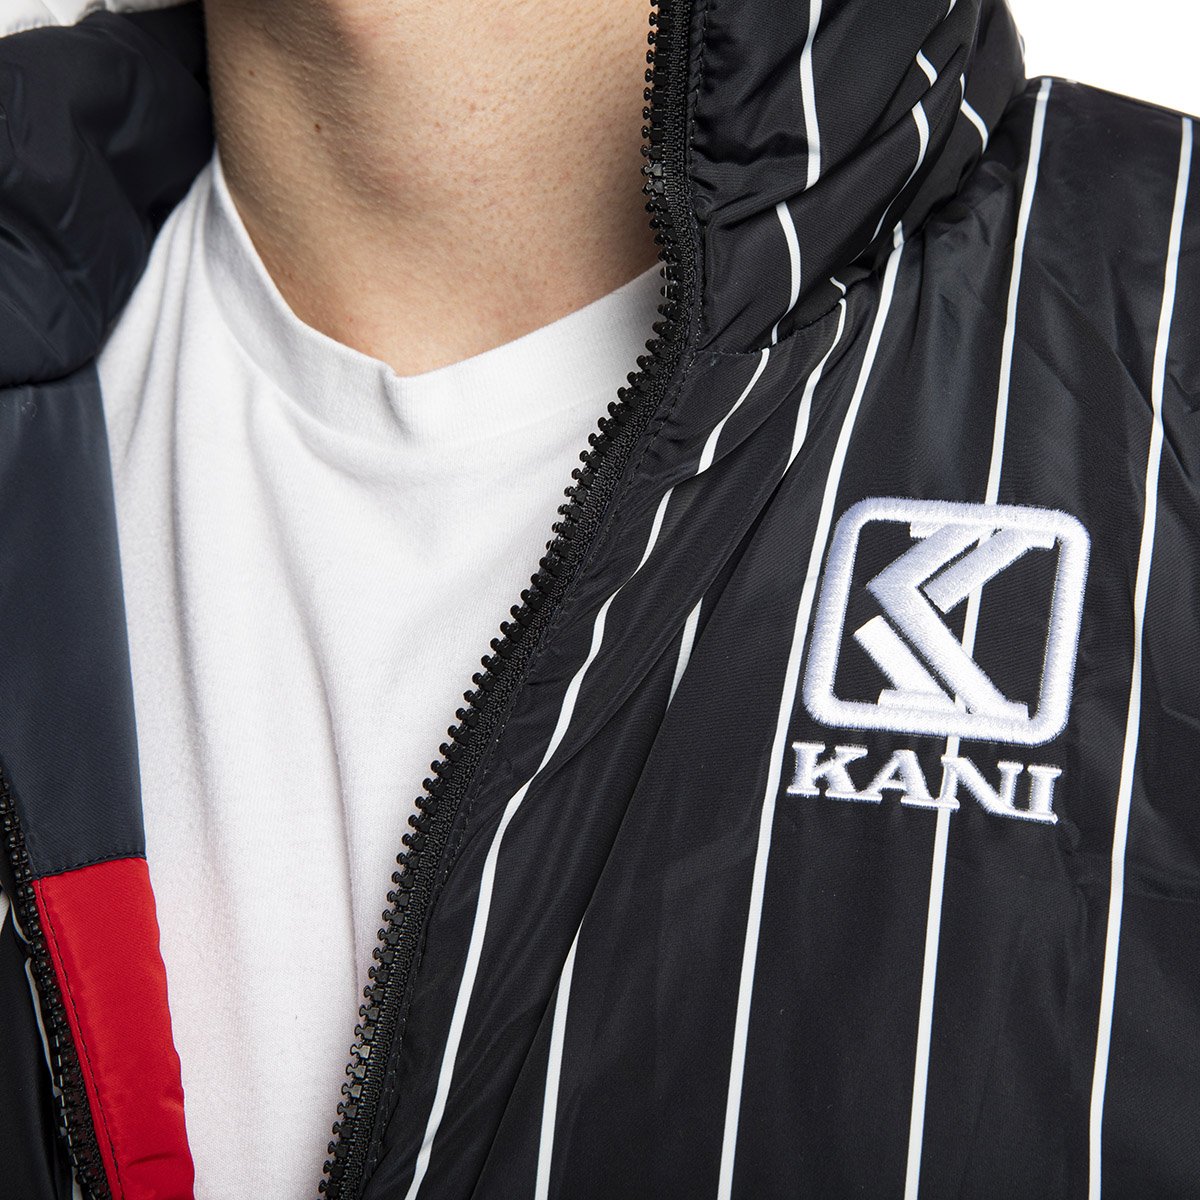 Karl Kani Retro Block Reversible Puffer Jacket navy/red | Bludshop.com